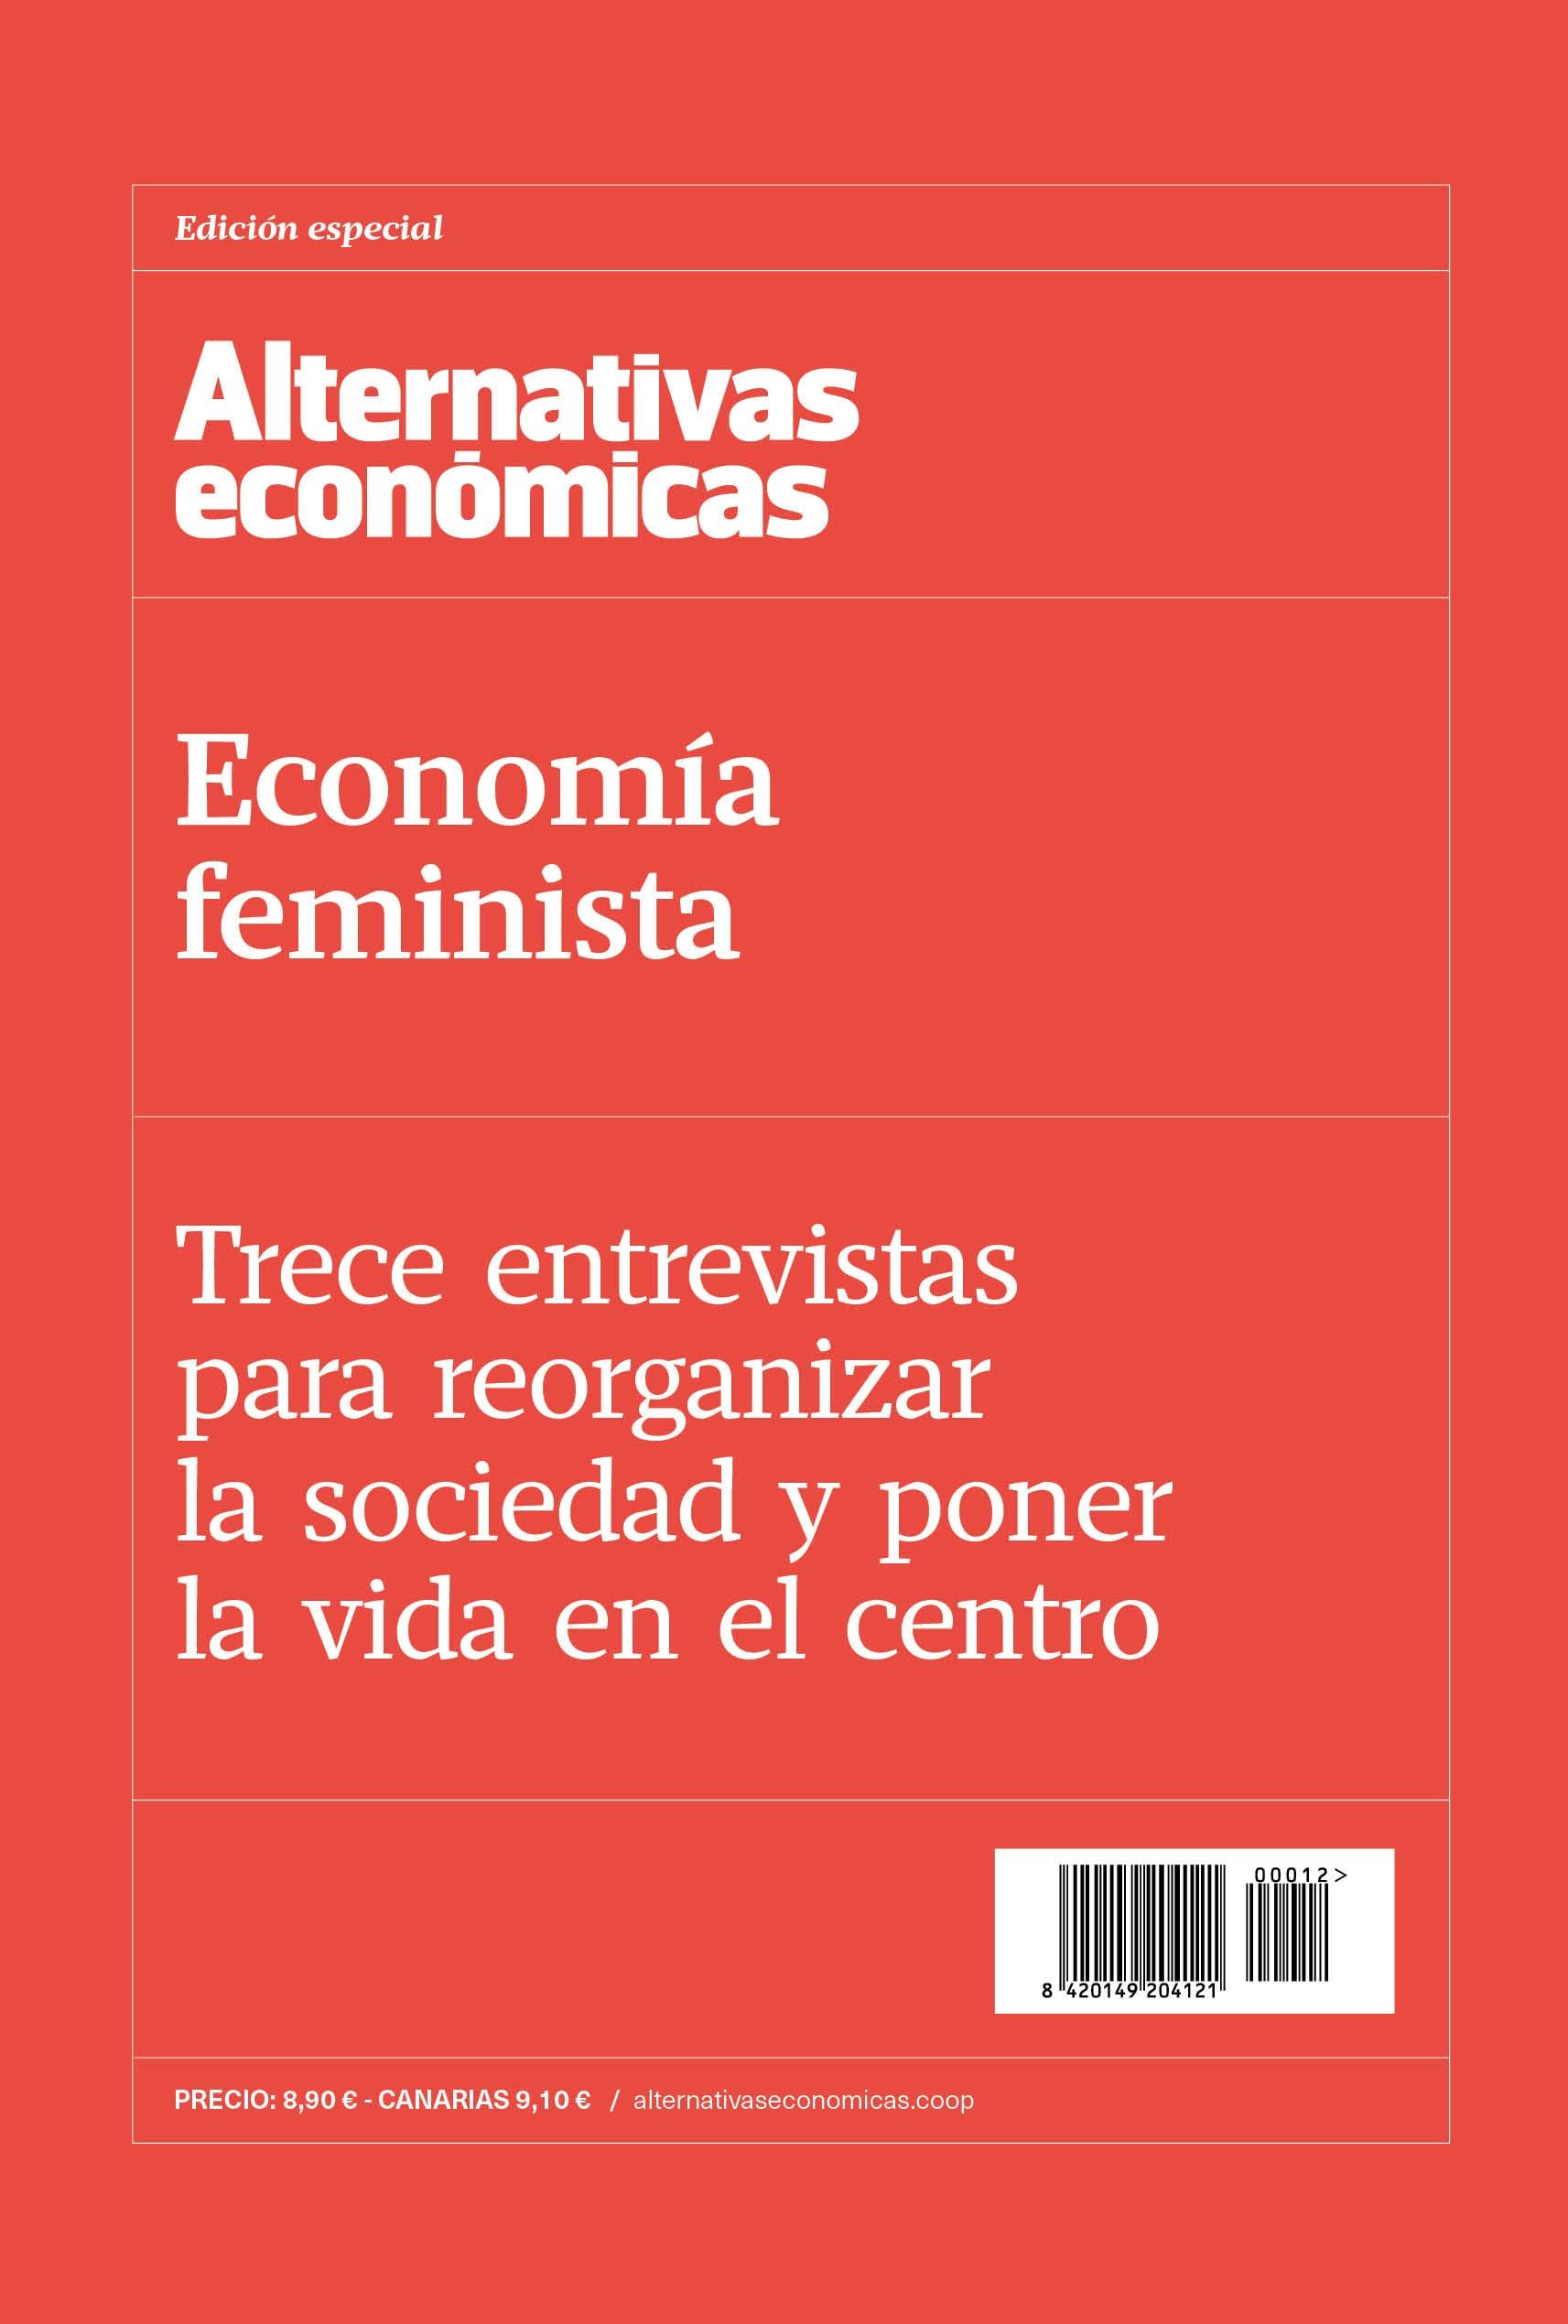 Economía feminista "Trece entrevistas para reorganizar la sociedad y poner la vida en el centro"